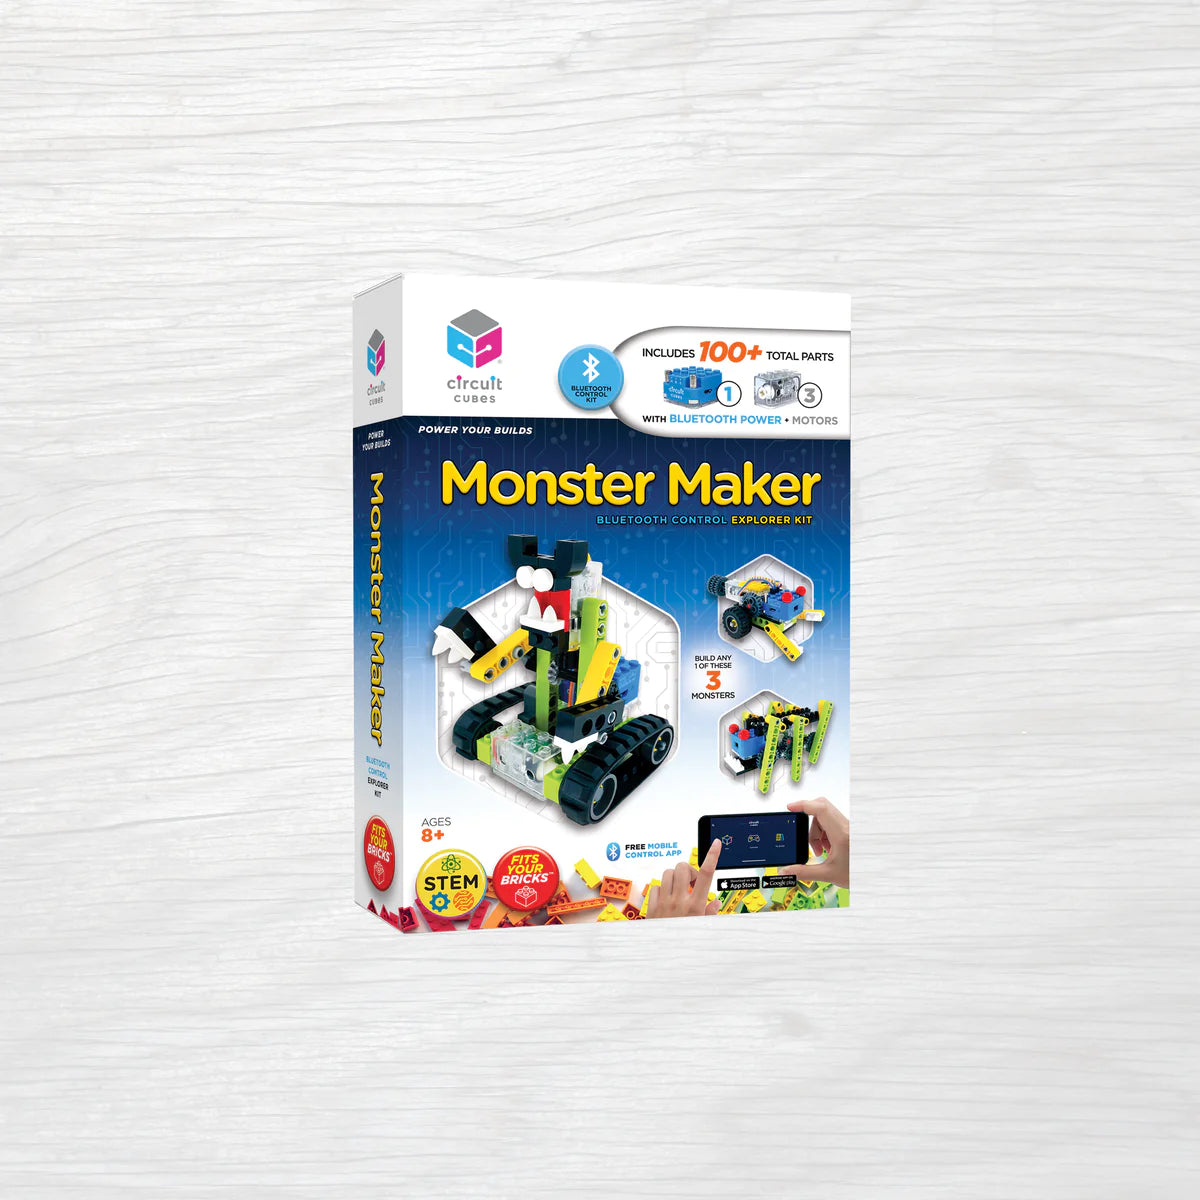 Circuit Cube: Monster Maker